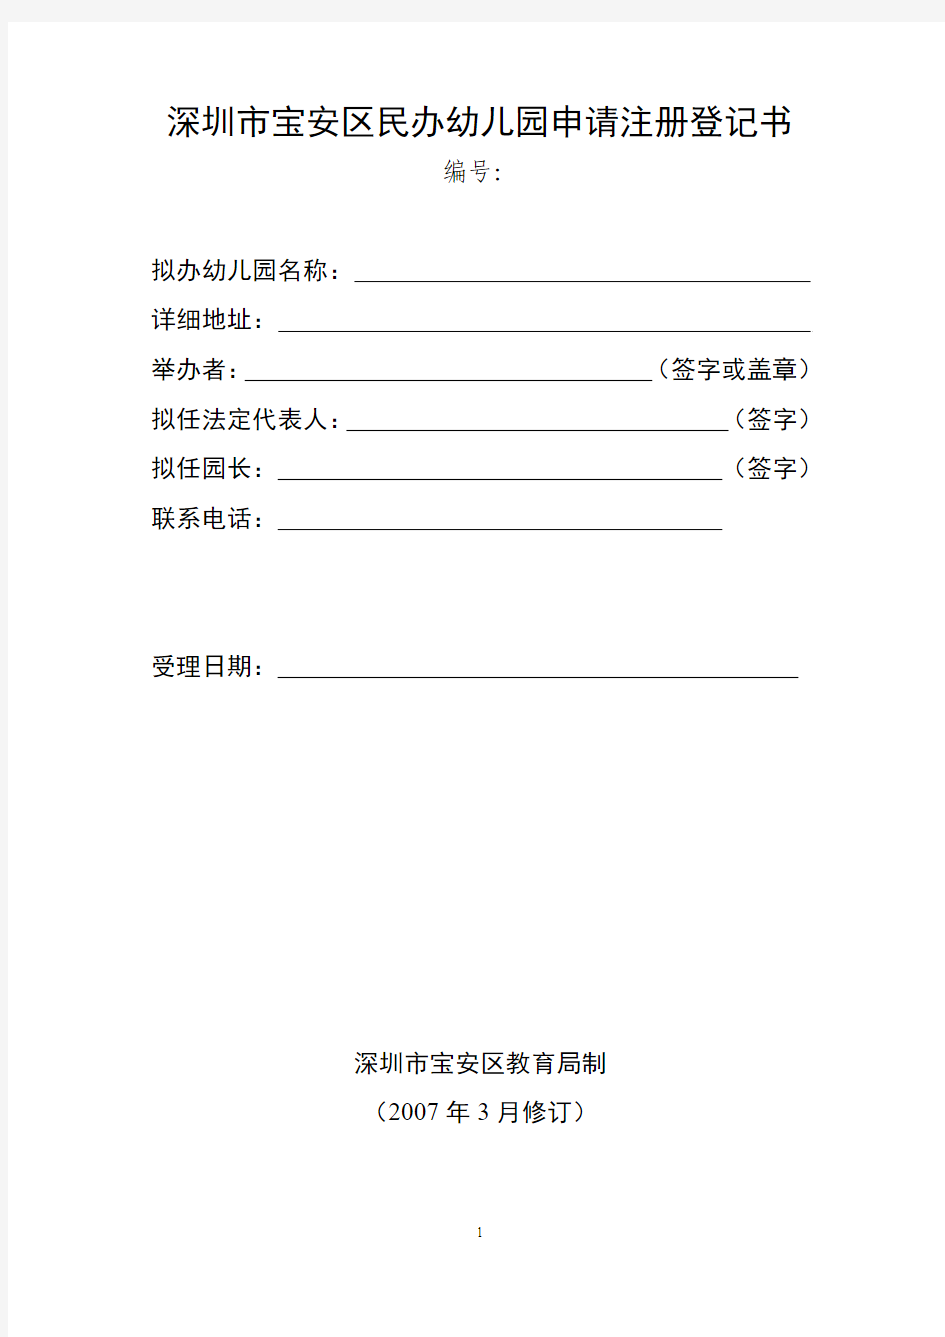 深圳市宝安区民办幼儿园申请注册登记书